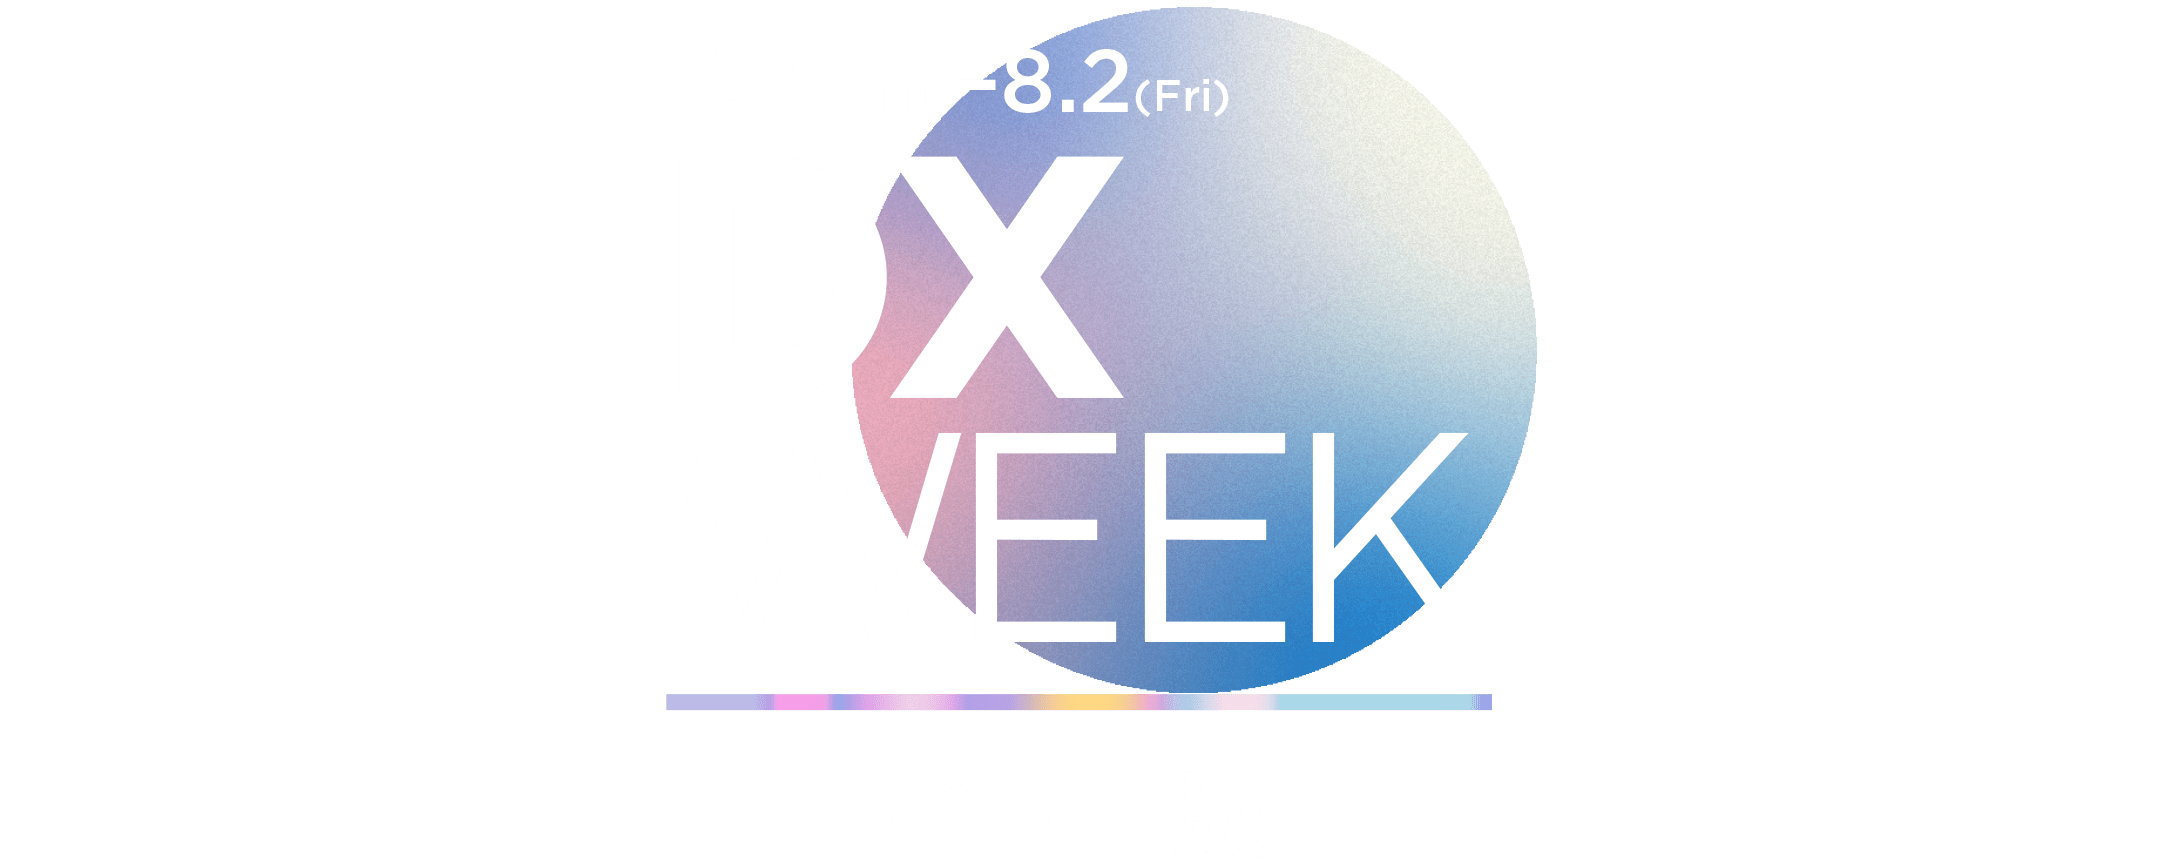 JBpress DX Week ベスト版